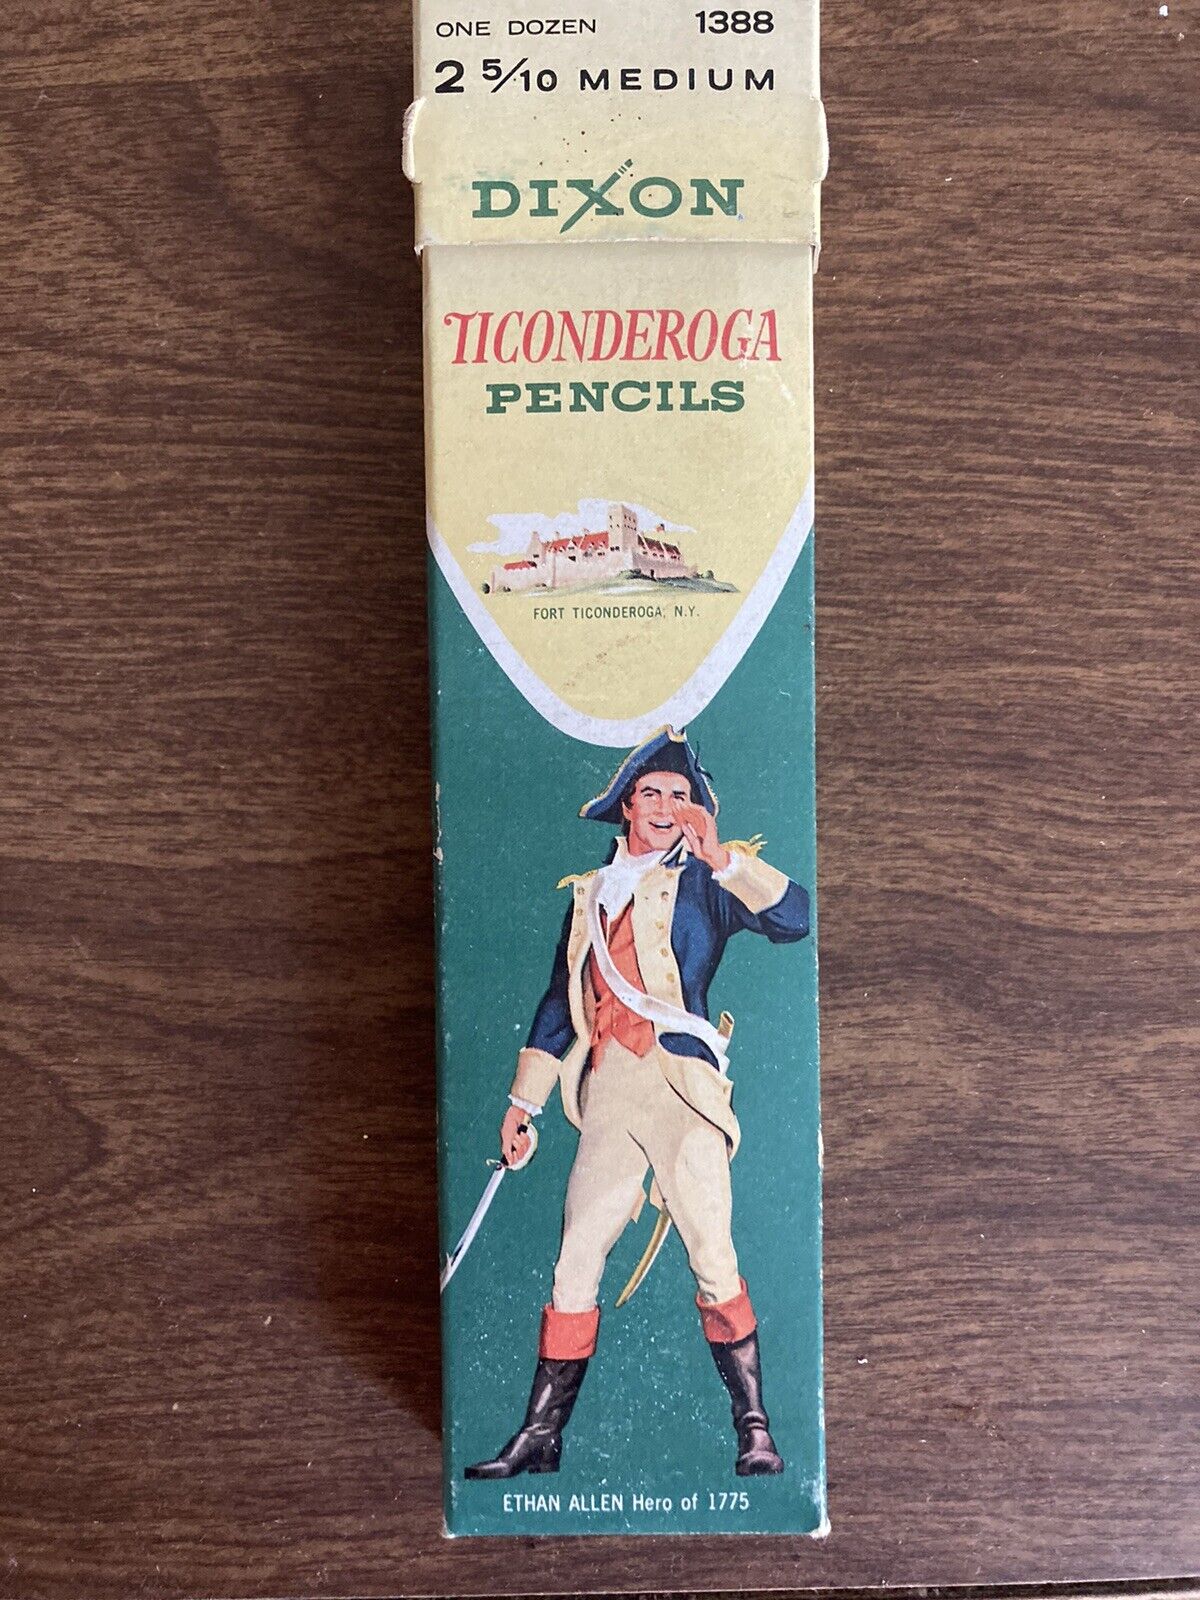 Vintage Dixon Ticonderoga Pencils 1388 No. 2 5/10 Medium One Dozen Read Descr